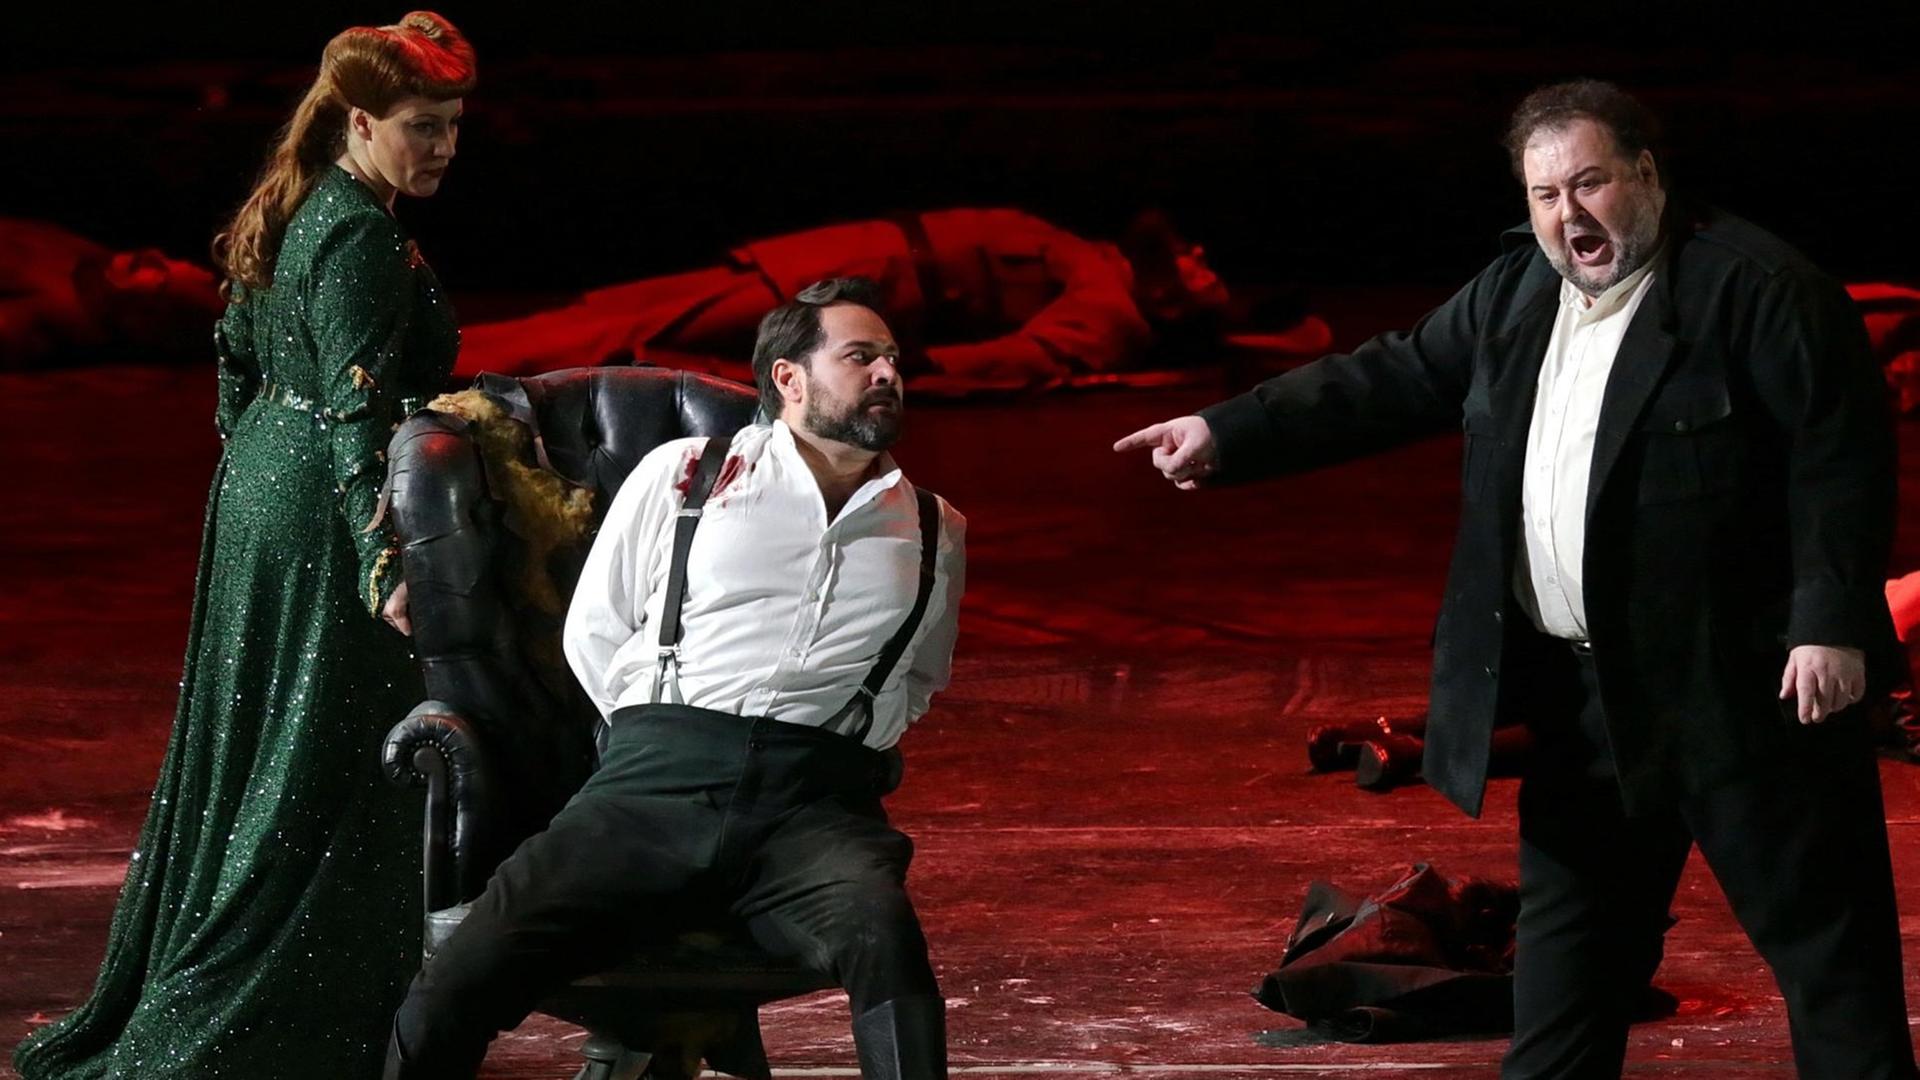 Saioa Hernandez, Ildar Abdrazakov (Mitte) und Fabio Sartori. Szene aus der Oper "Attila" von Guiseppe Verdi in der Regie von Davide Livermore an der Mailänder Scala.